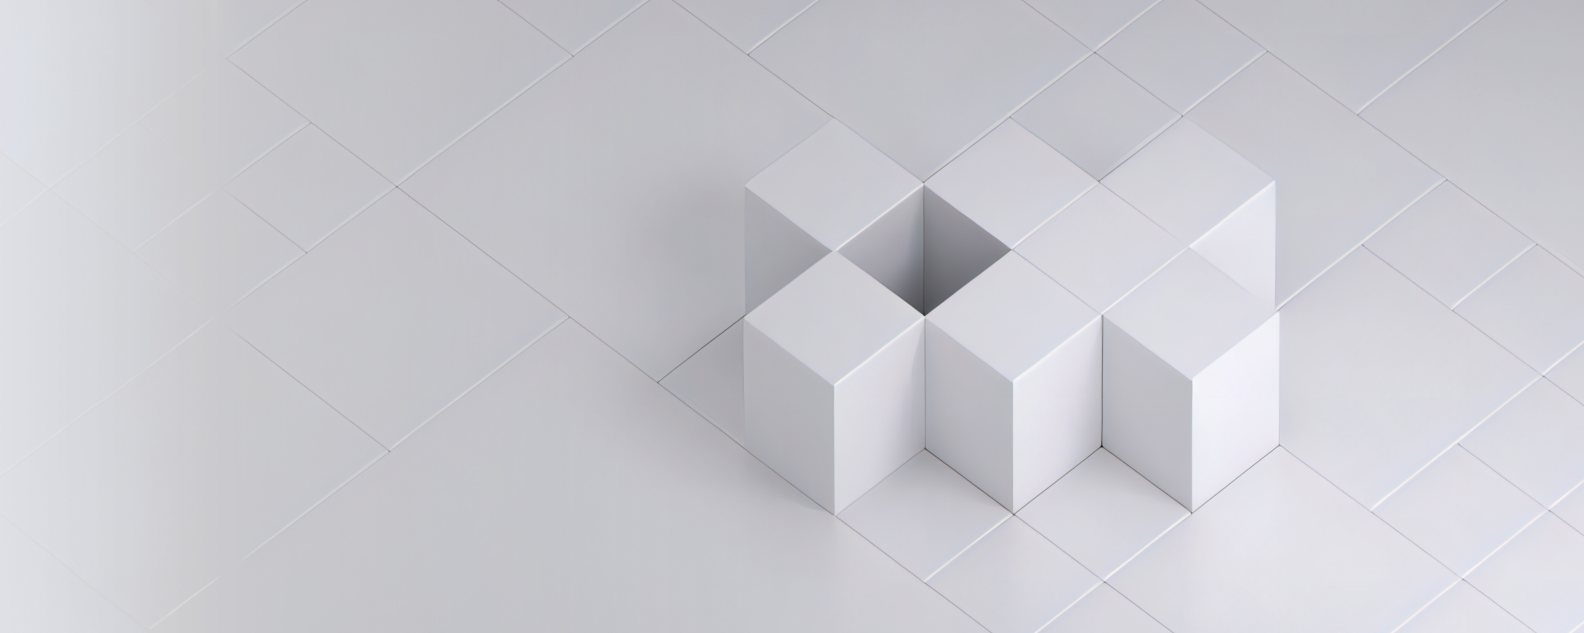 Imagen o foto realista de siete cubos blancos dispuestos sobre una cuadrícula blanca de cuadrados creando un patrón